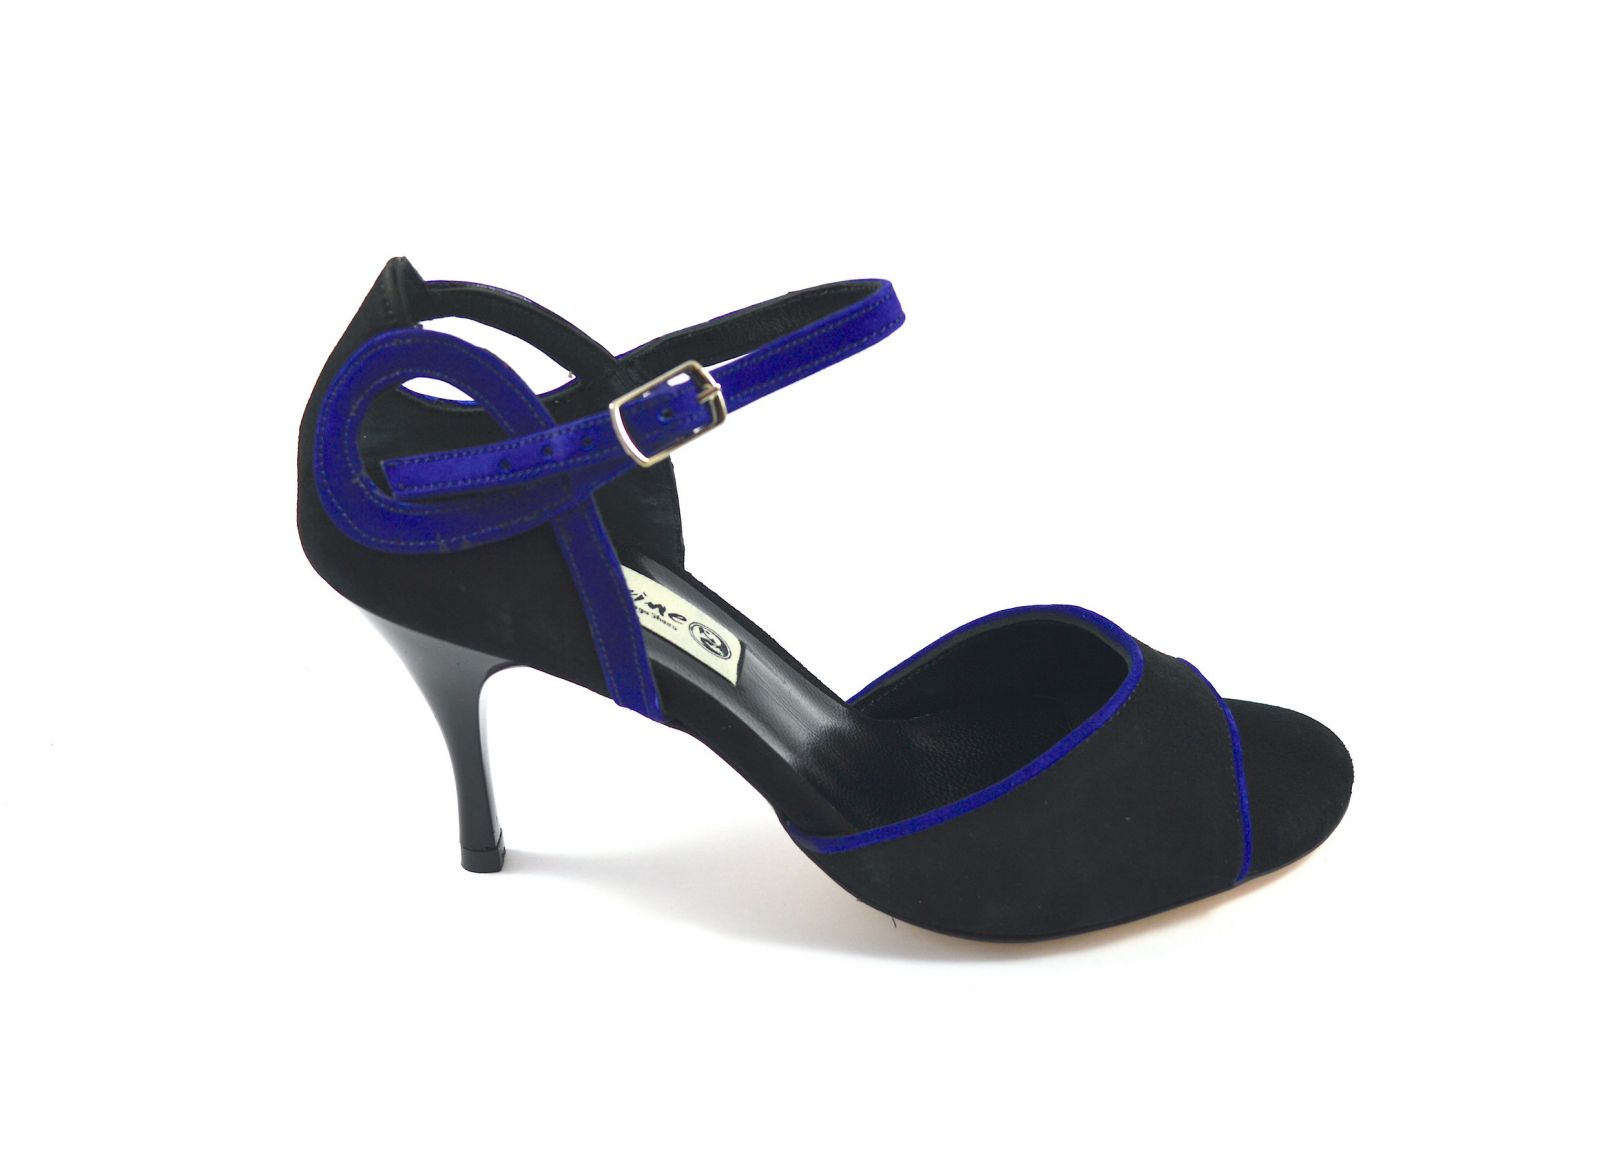 Γυναικείο παπούτσι tango open toe από μαύρο σουέτ και μπλε ρέλι